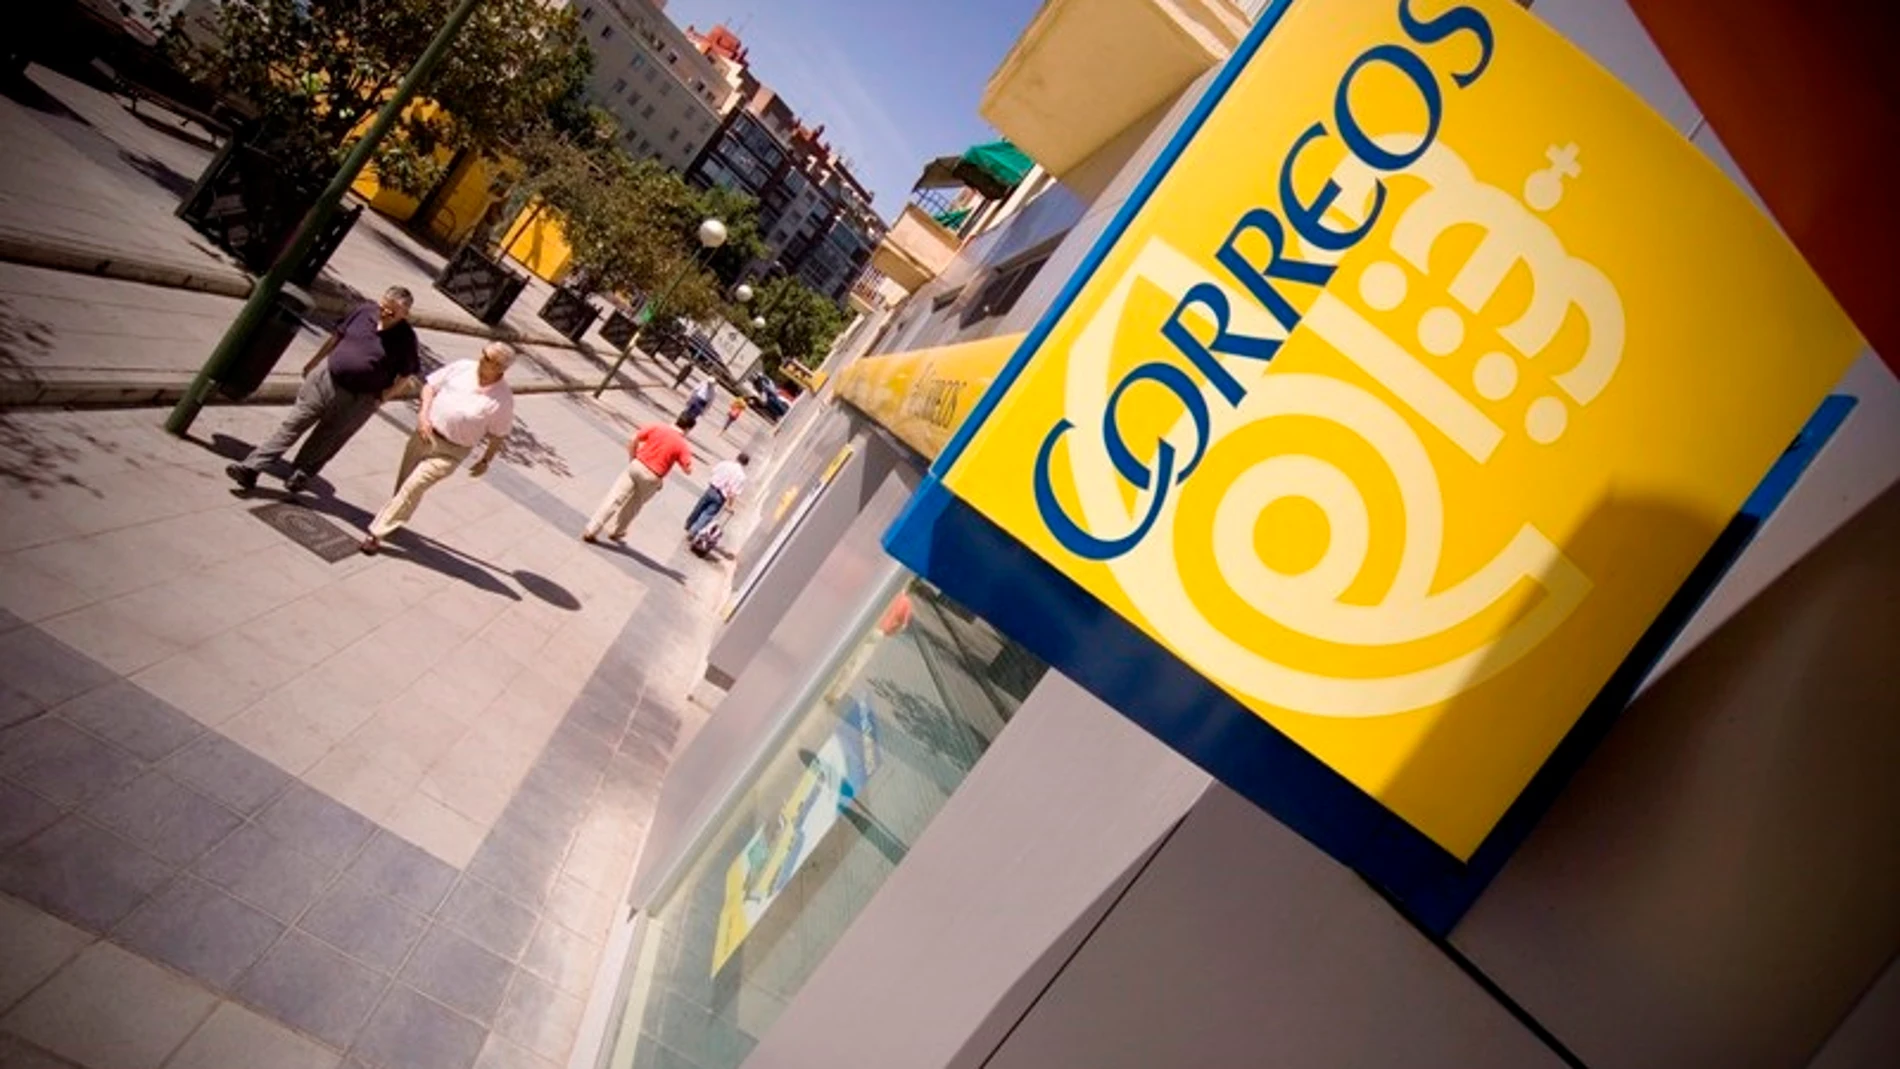 Economía/Finanzas.- Los clientes de BBVA en España ya pueden sacar efectivo de las oficinas de Correos